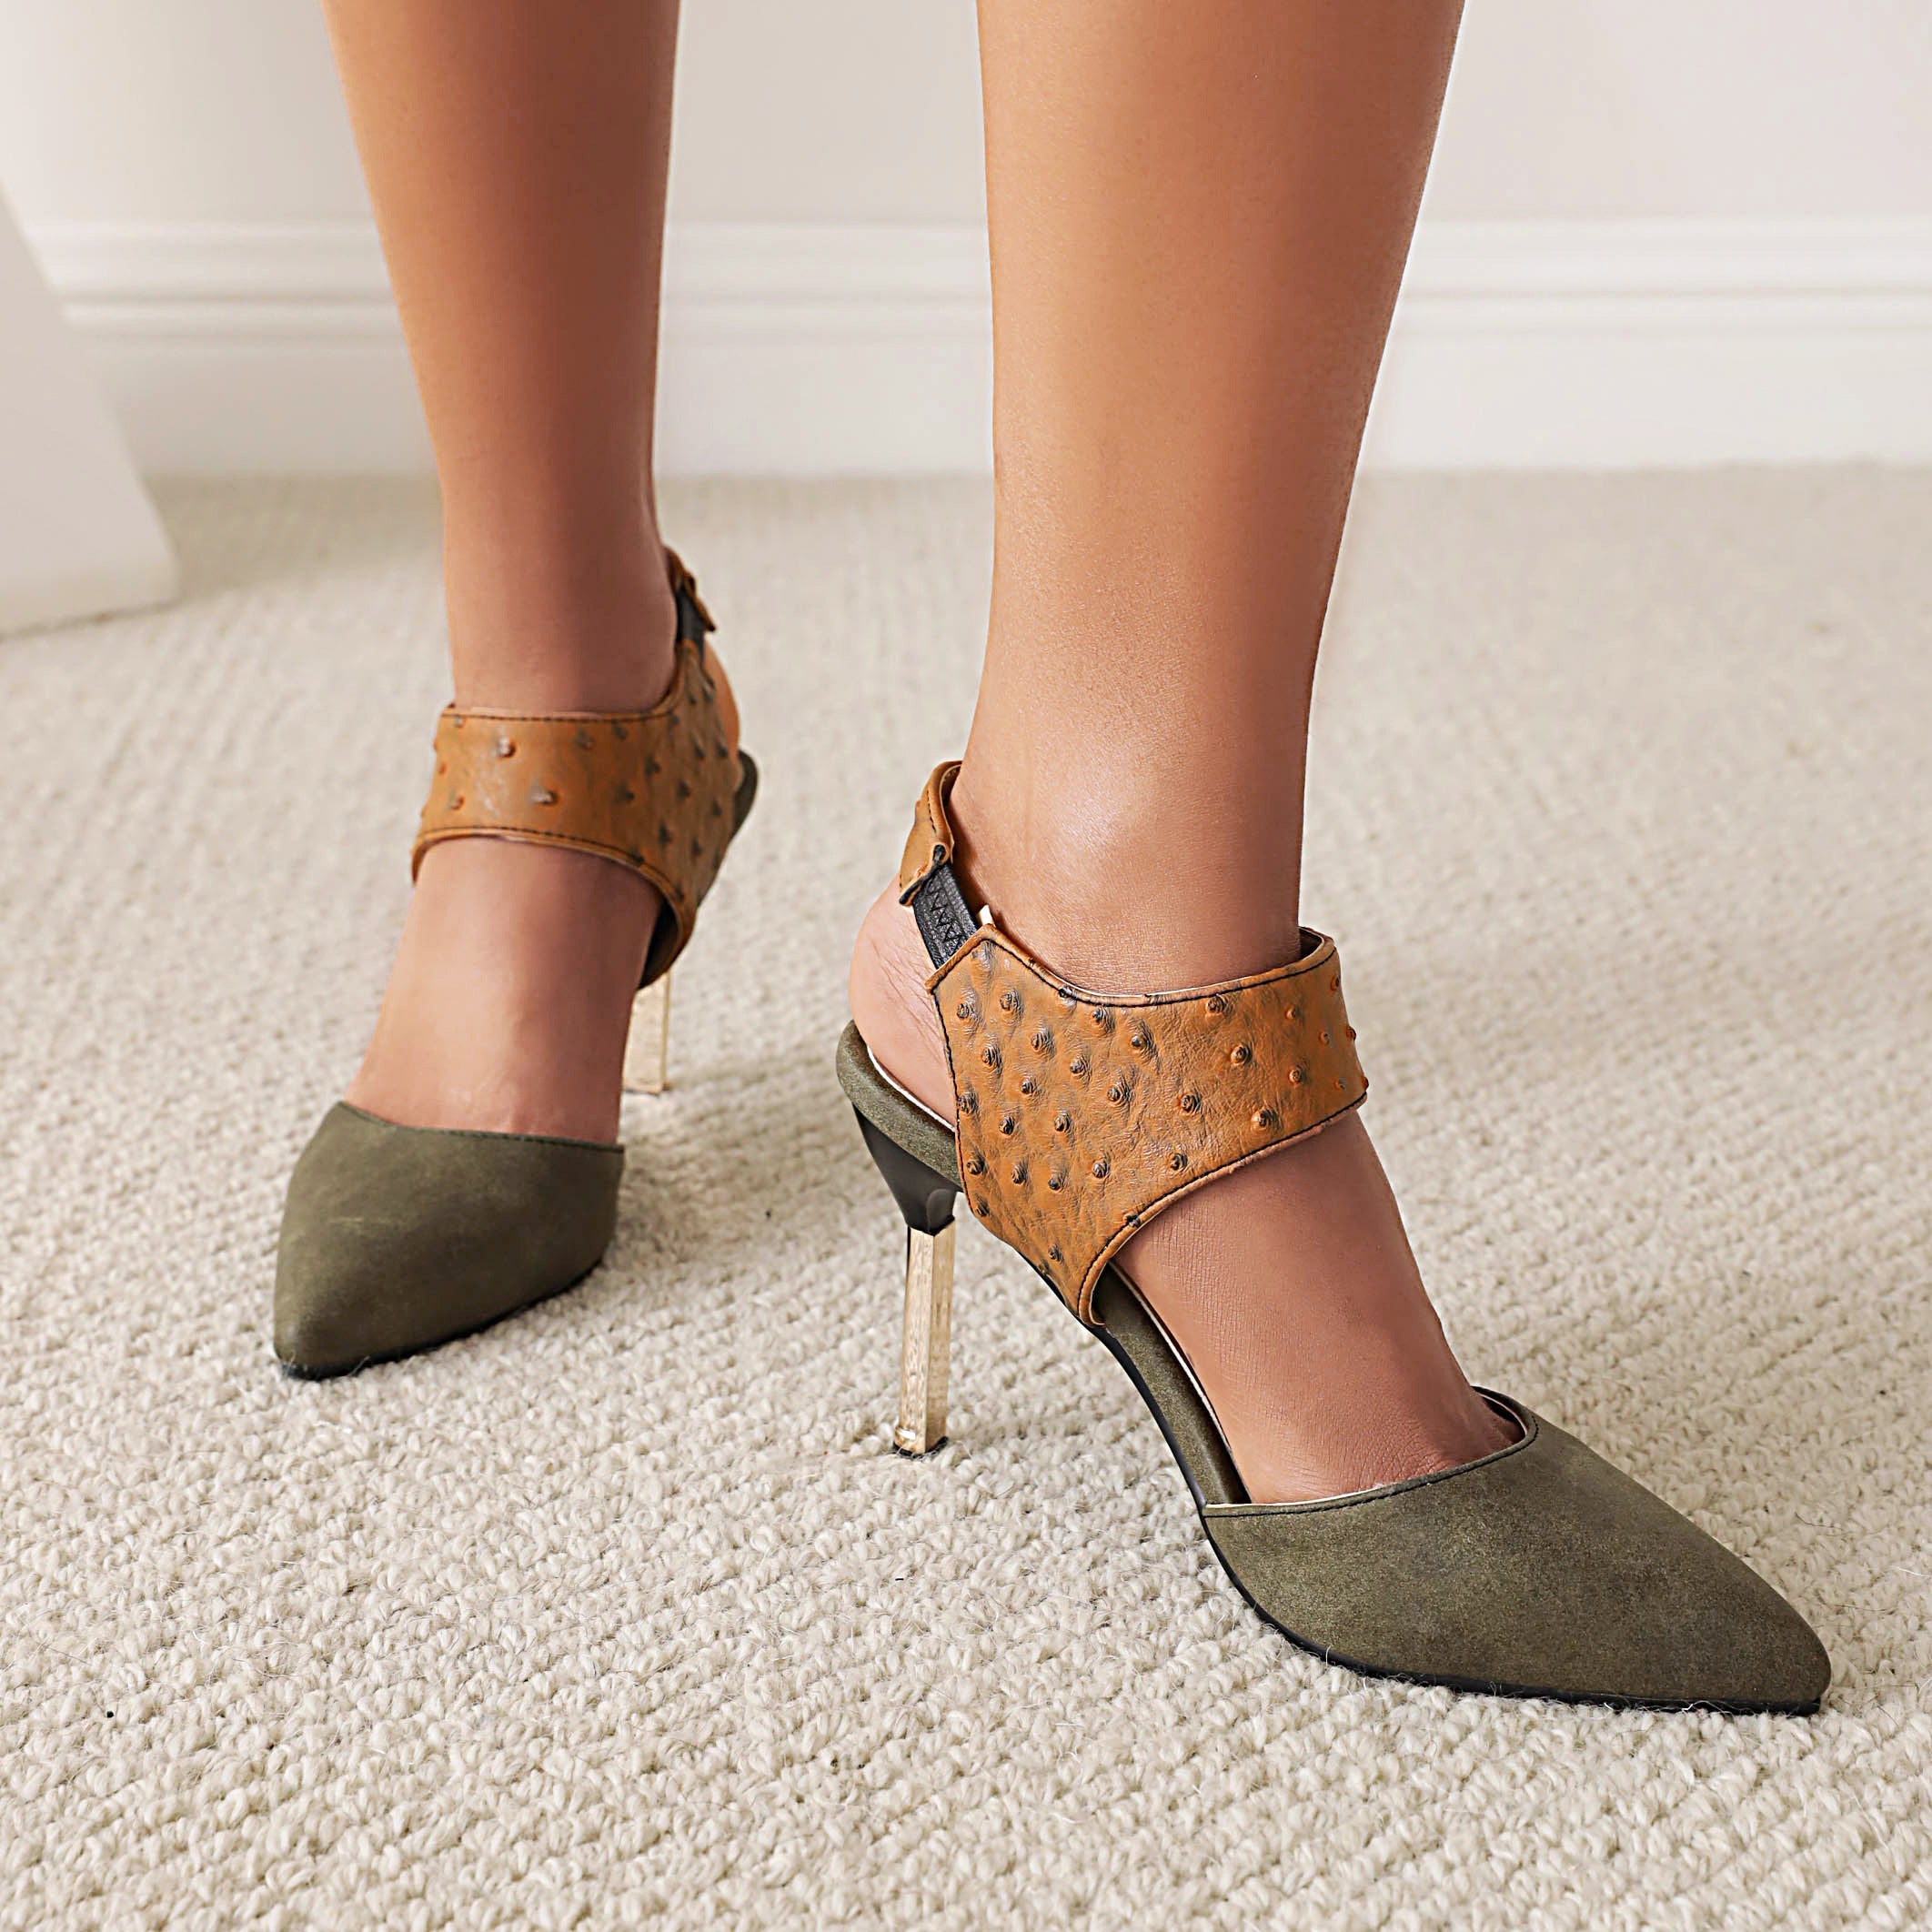 Bigsizeheels Slingback Peep Toe Stiletto Heel Sandals - Green best oversized womens heels are from bigsizeheel®